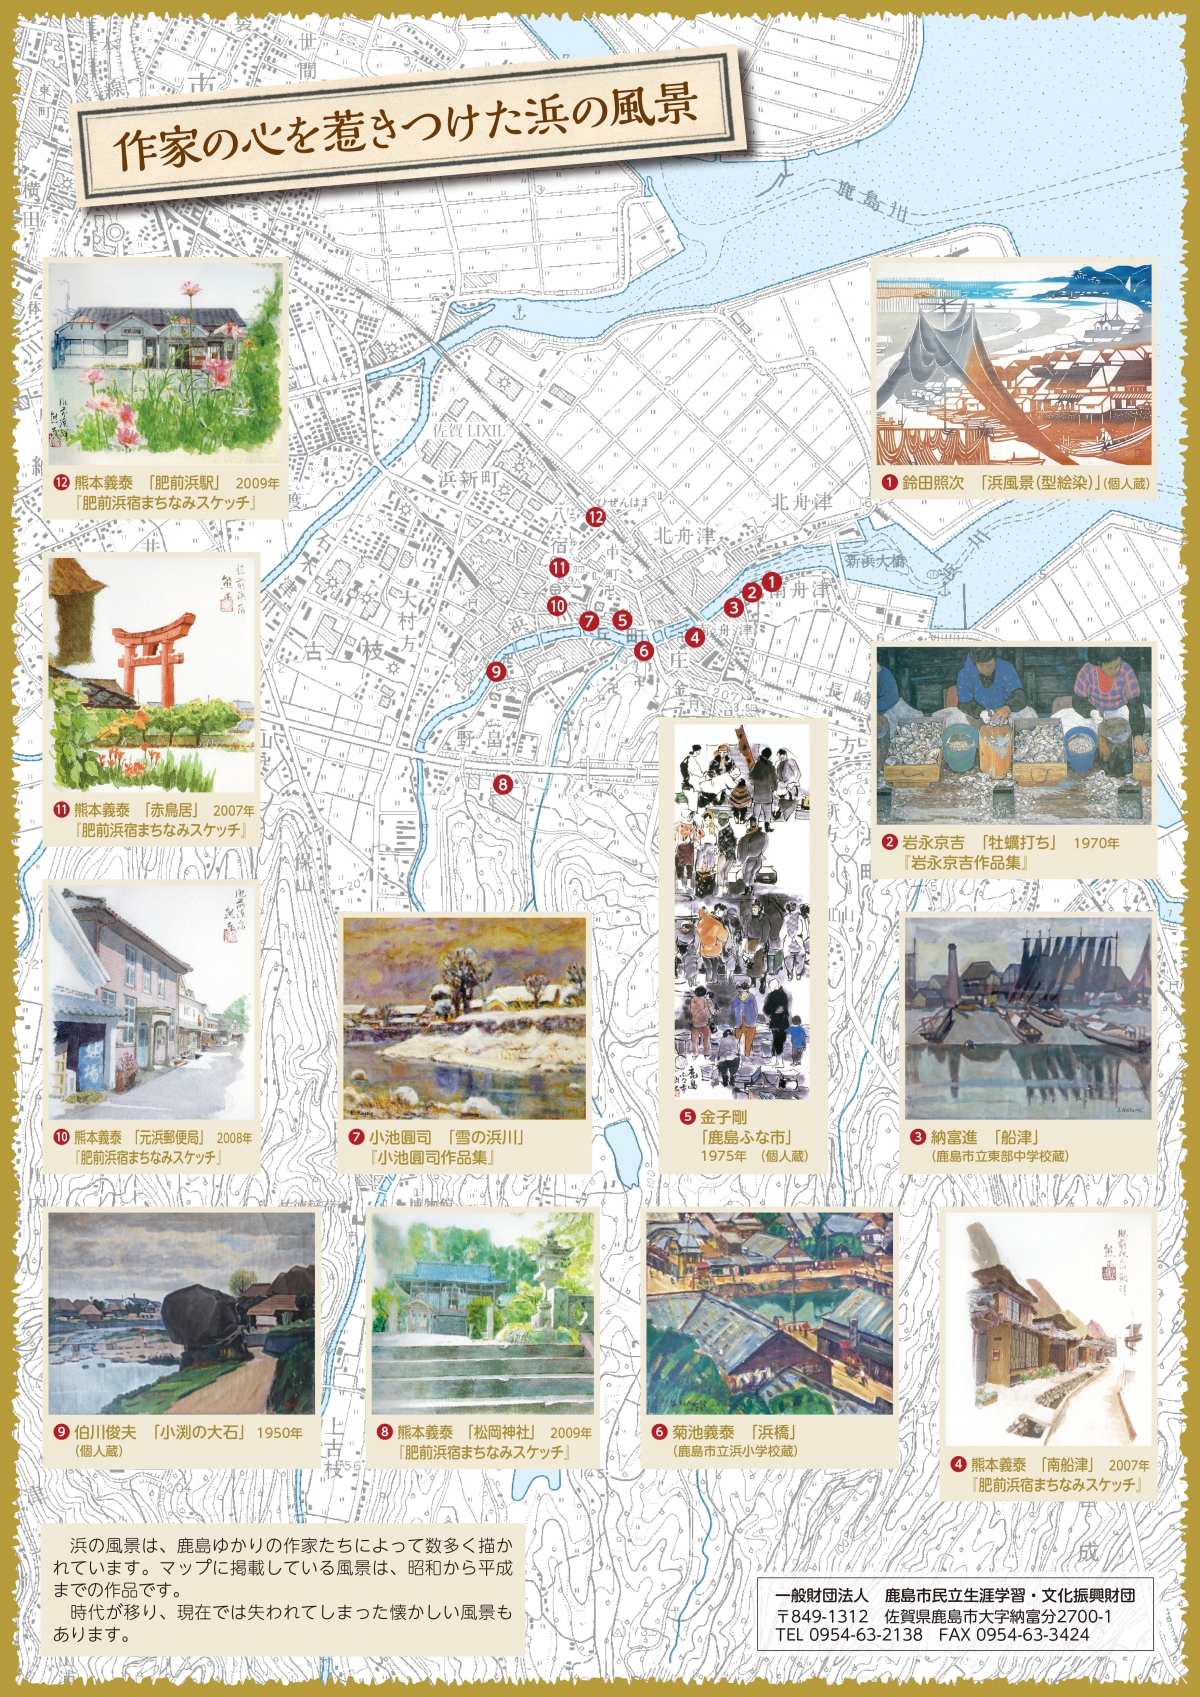 鹿島市 浜地区 探訪マップ 裏 風景画